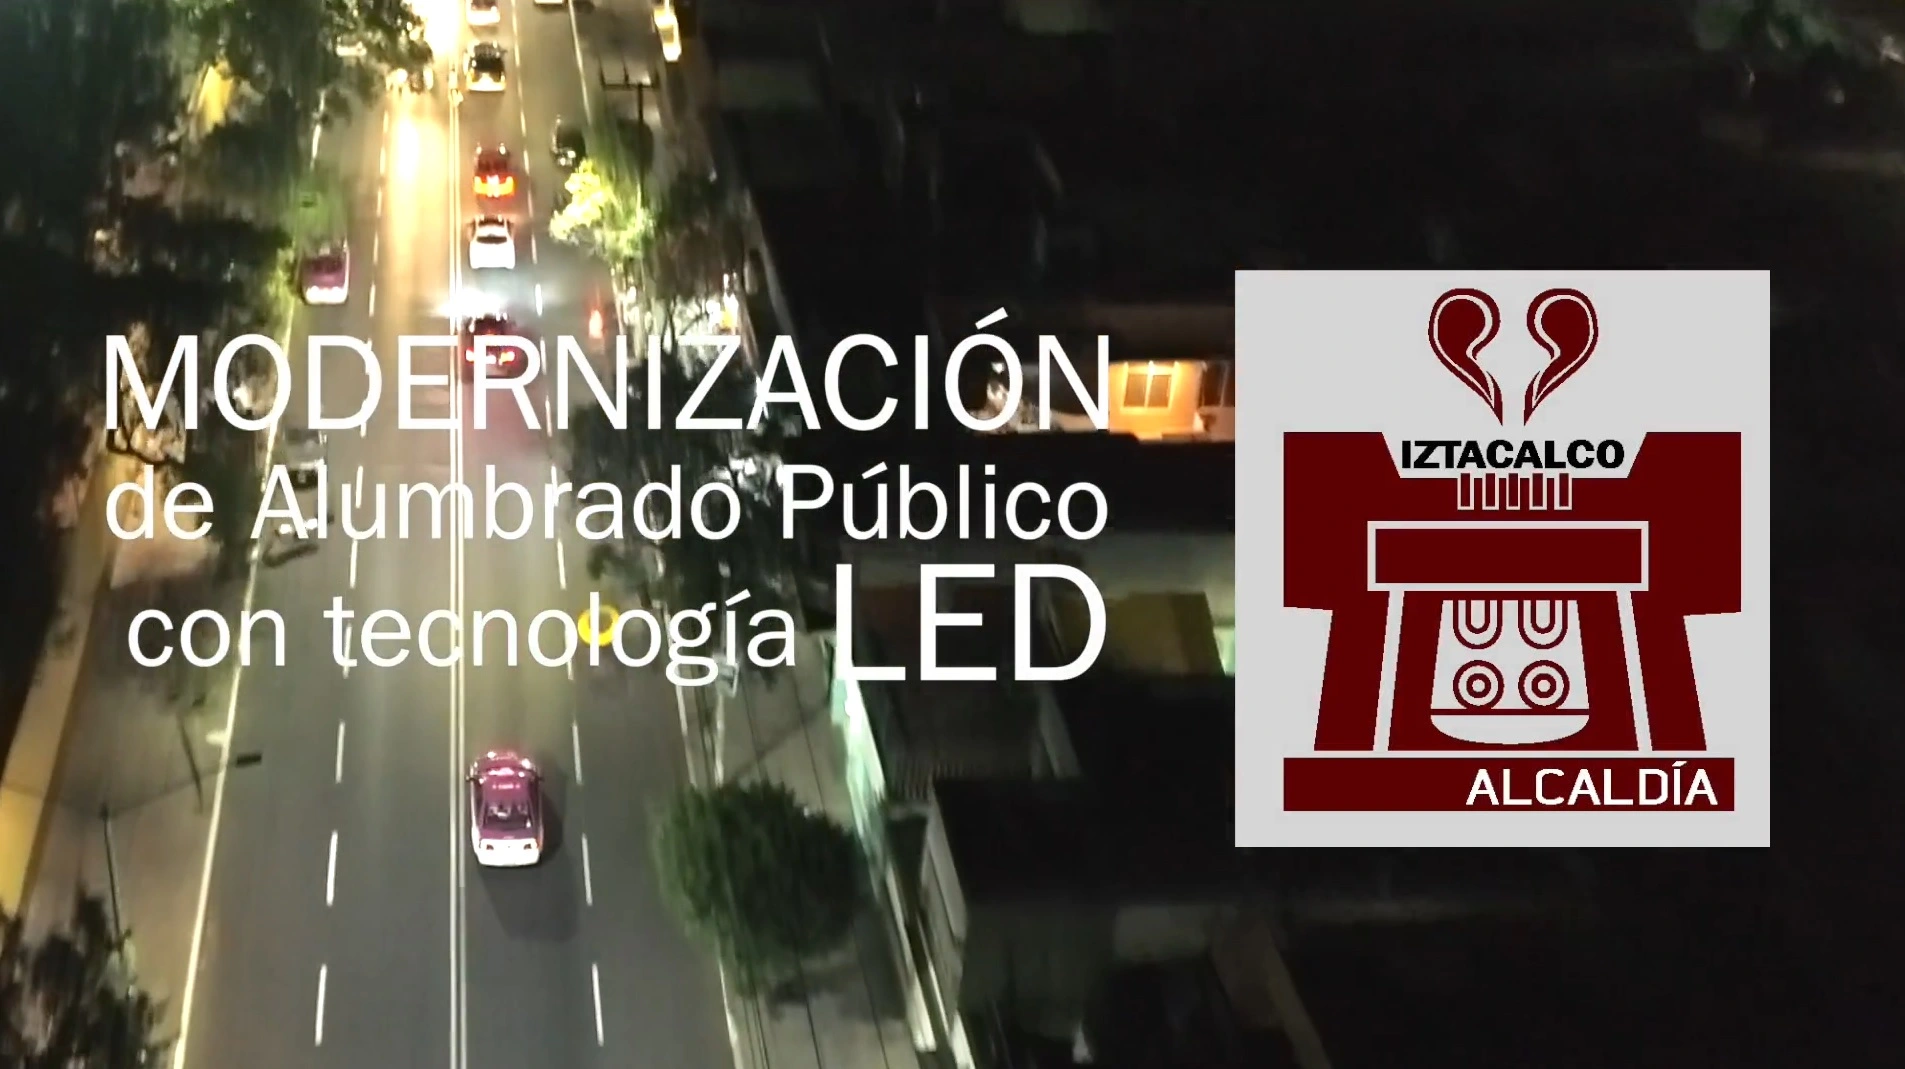 Siendo una de las principales demandas Ciudadanas la Seguridad, la Alcaldía de Iztacalco en la CDMX, tomo cartas en el asunto y modernizo la iluminación a tecnología LED.